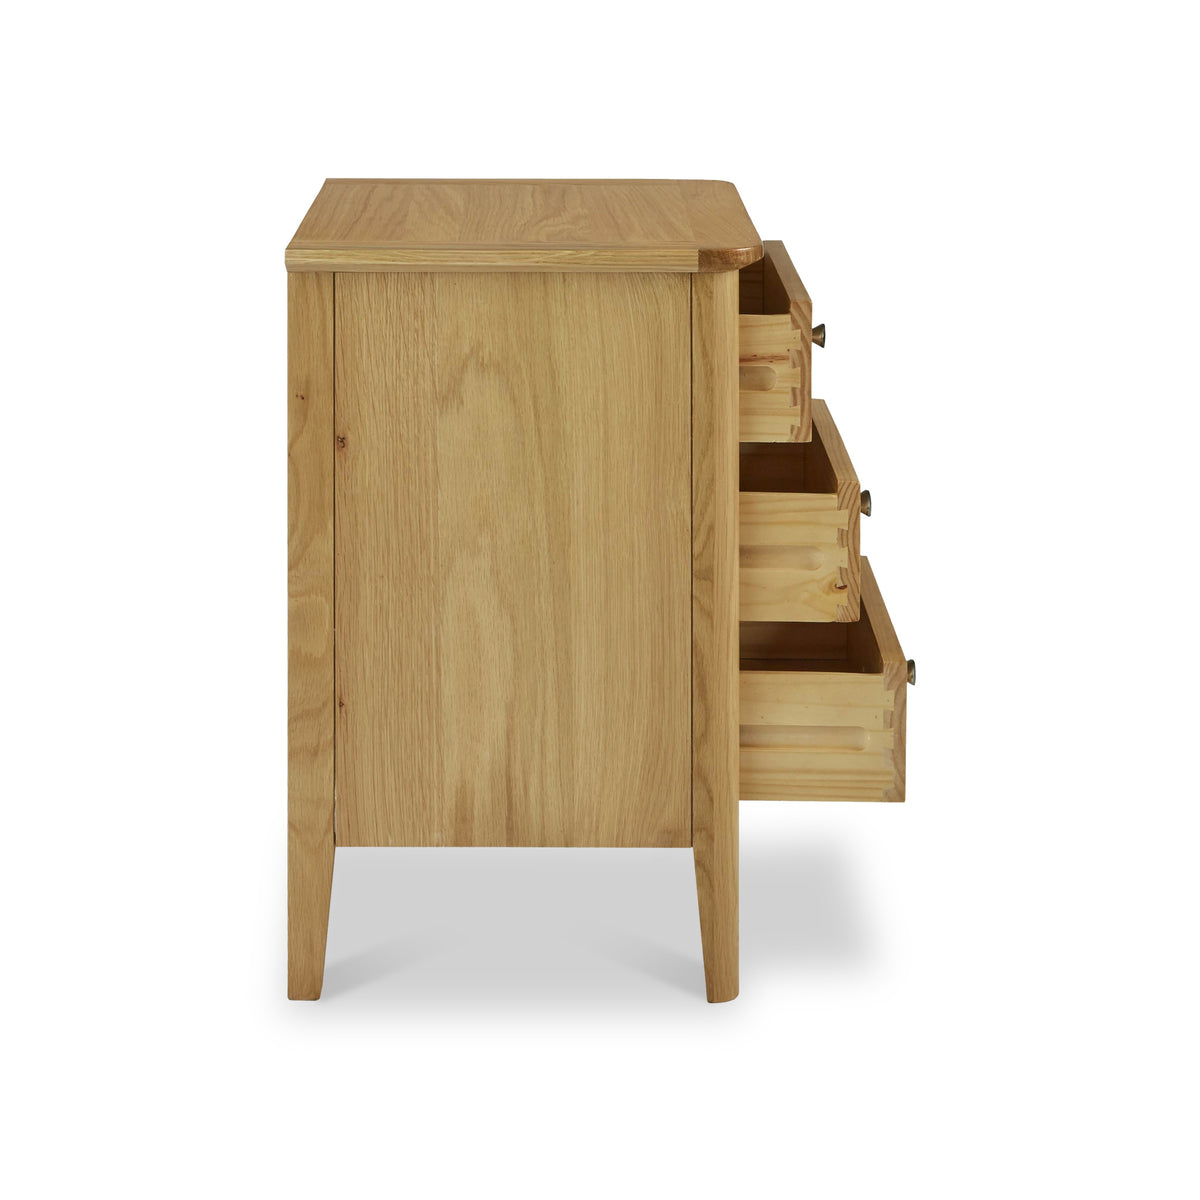 Alba Oak 3 Drawer Bedside Table from Roseland Furniture